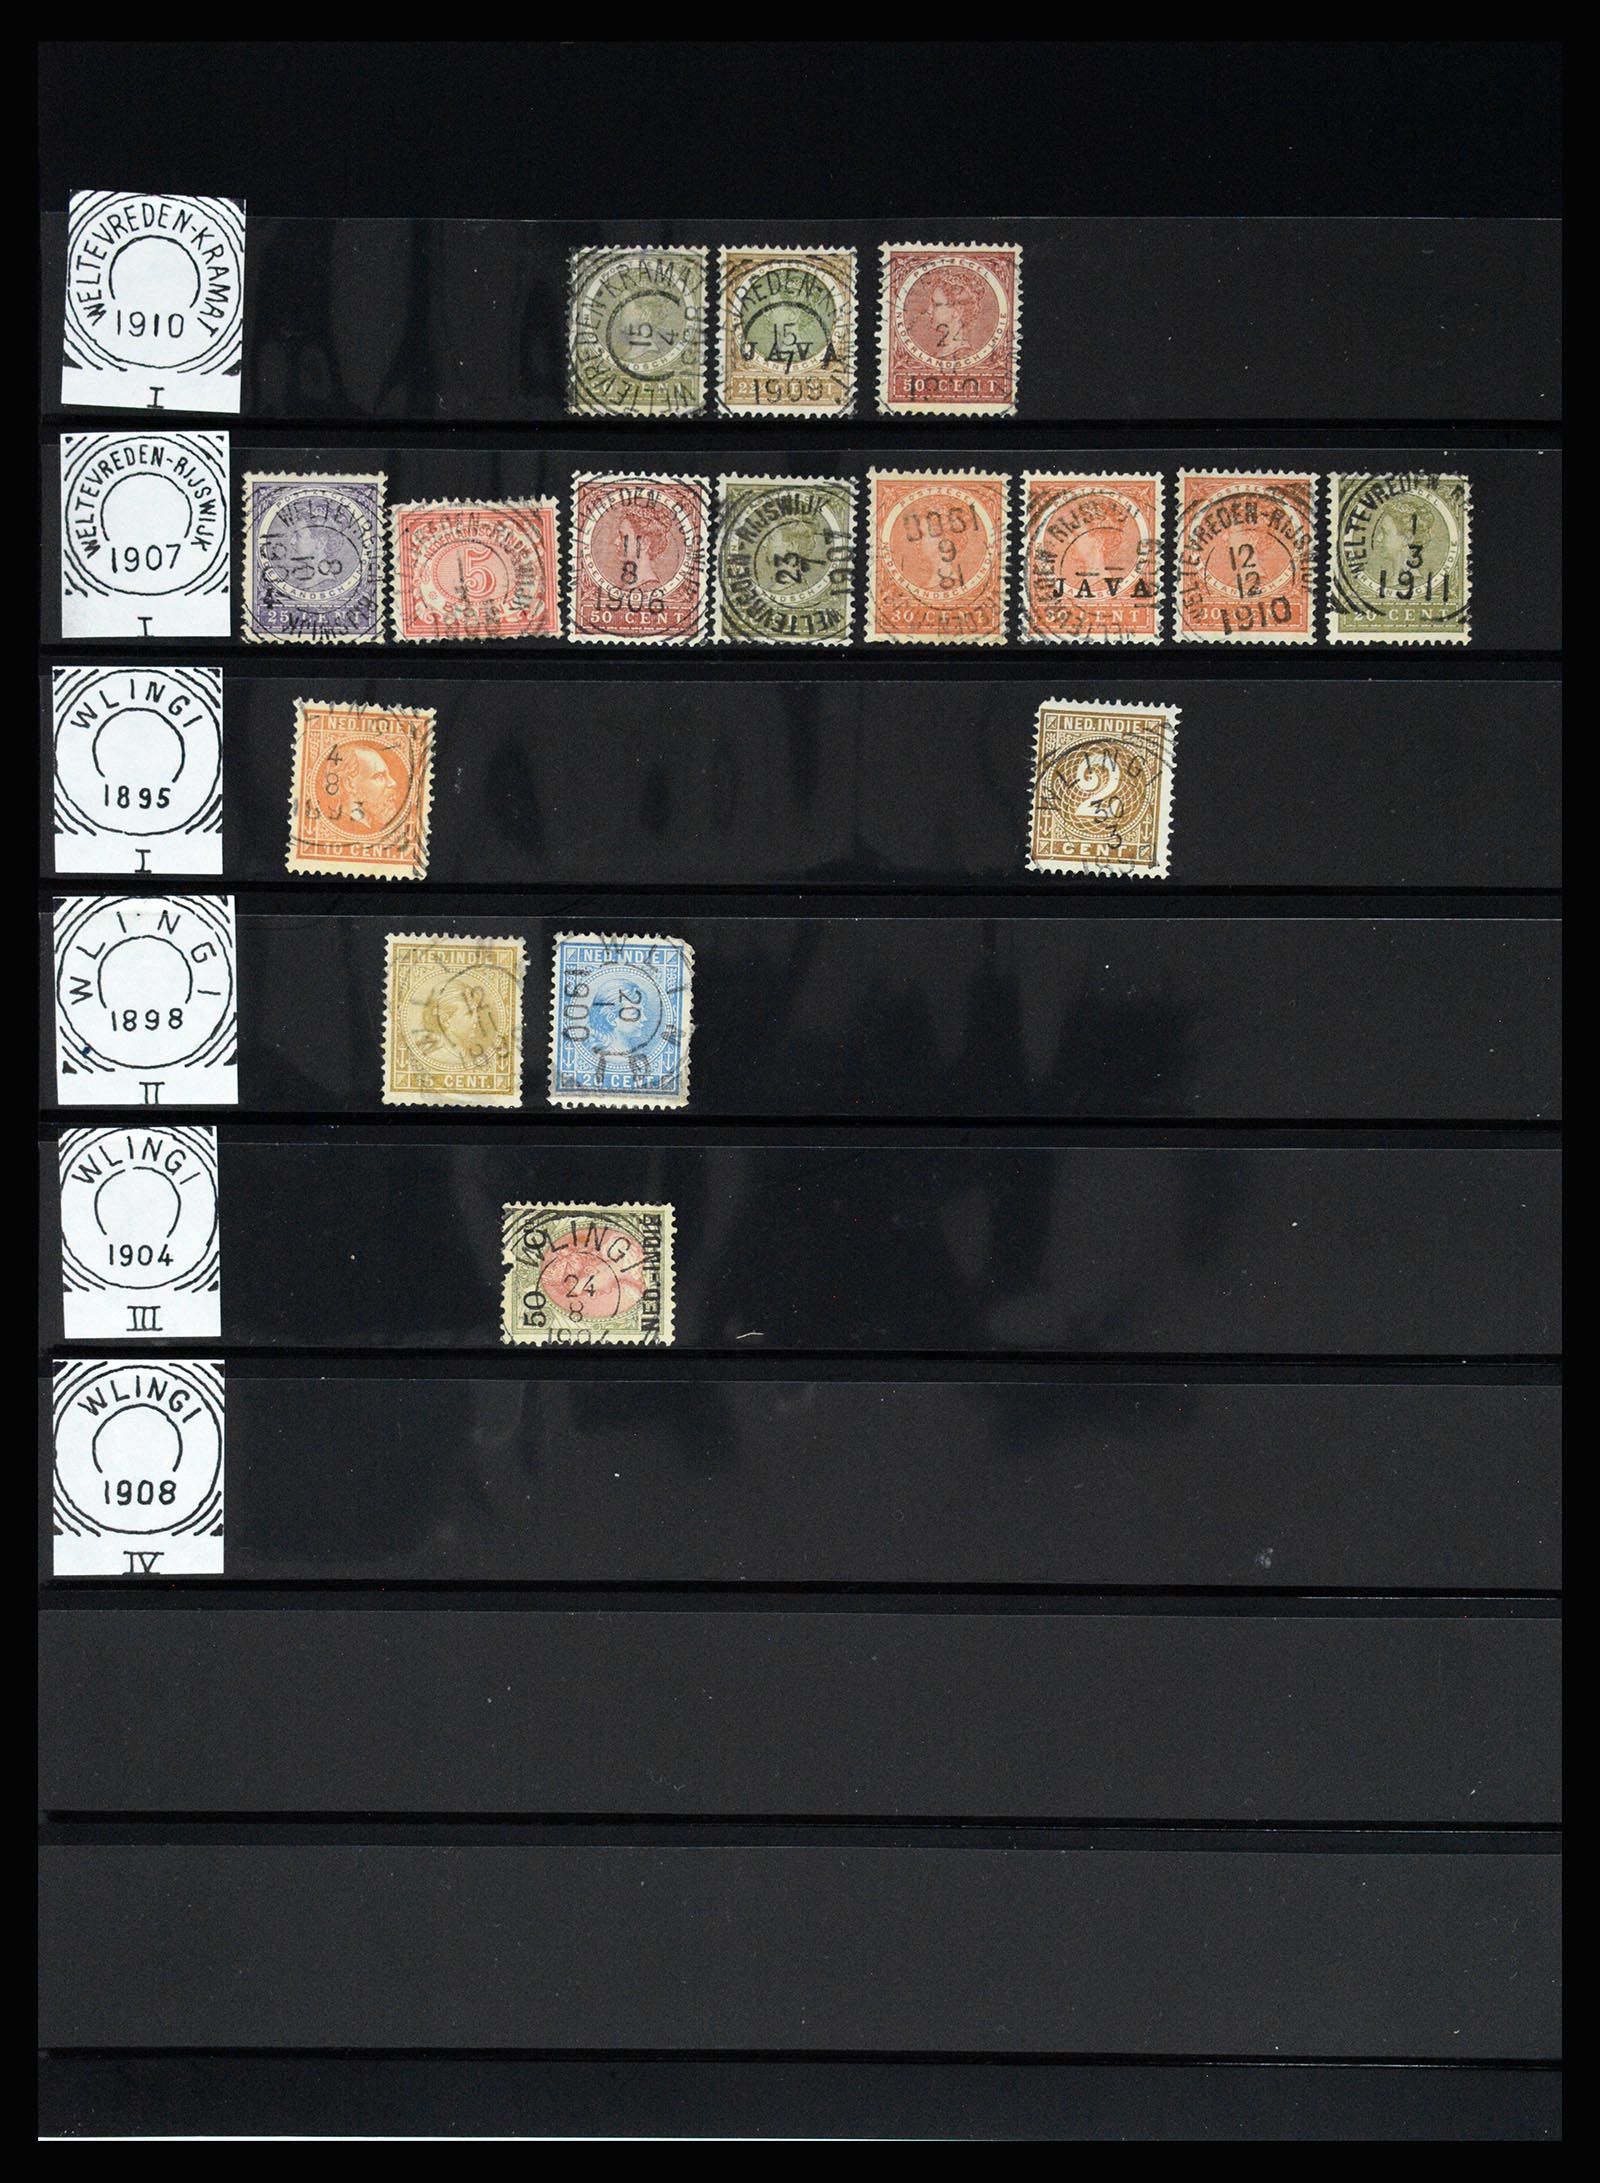 36512 163 - Stamp collection 36512 Nederlands Indië stempels 1872-1930.